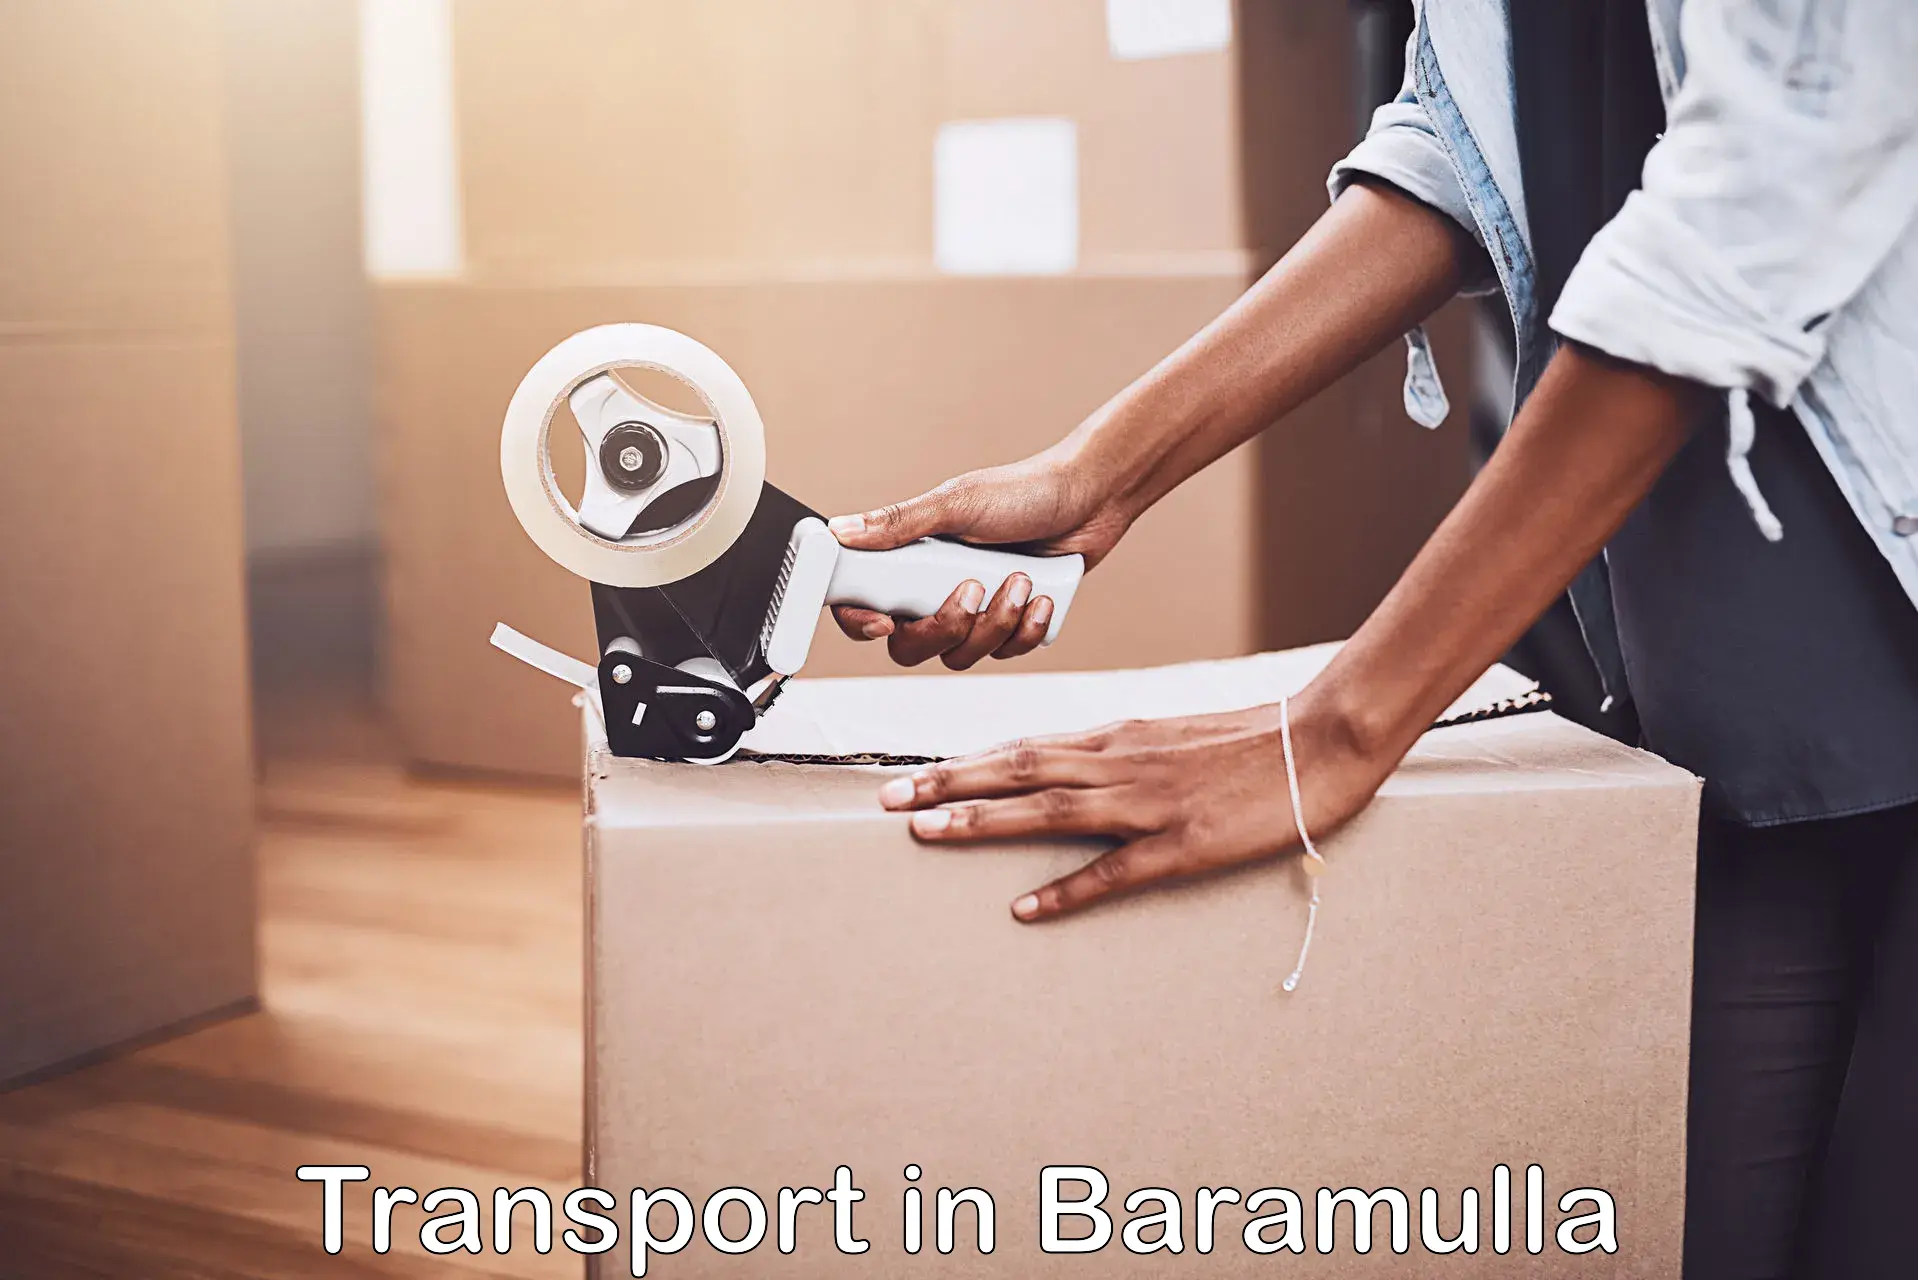 Furniture transport service in Baramulla